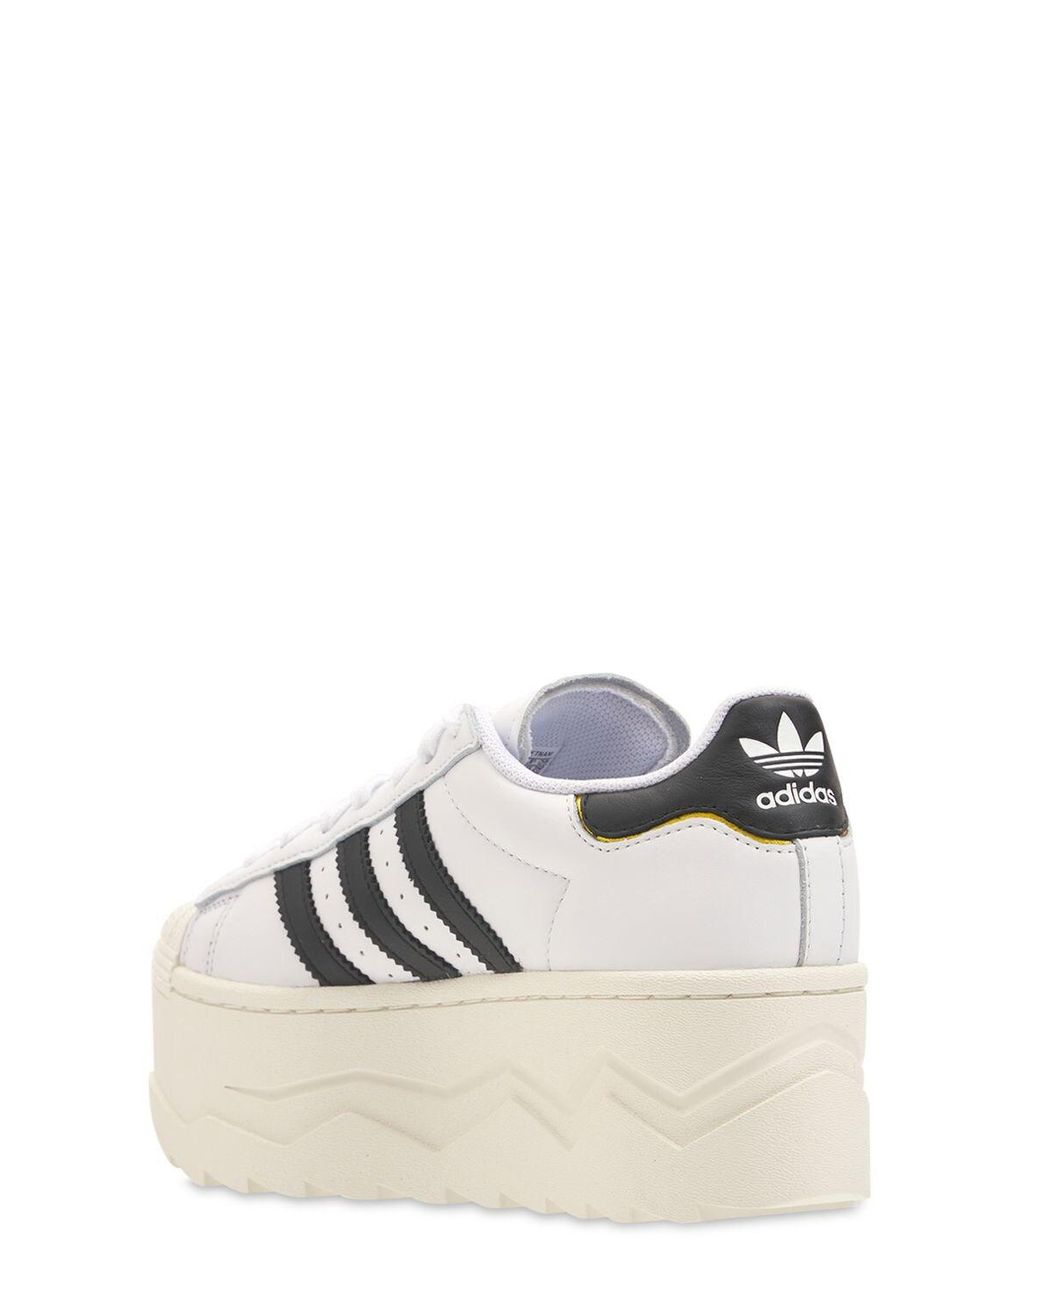 adidas Originals Superstar Platform Sneakers in White | Lyst